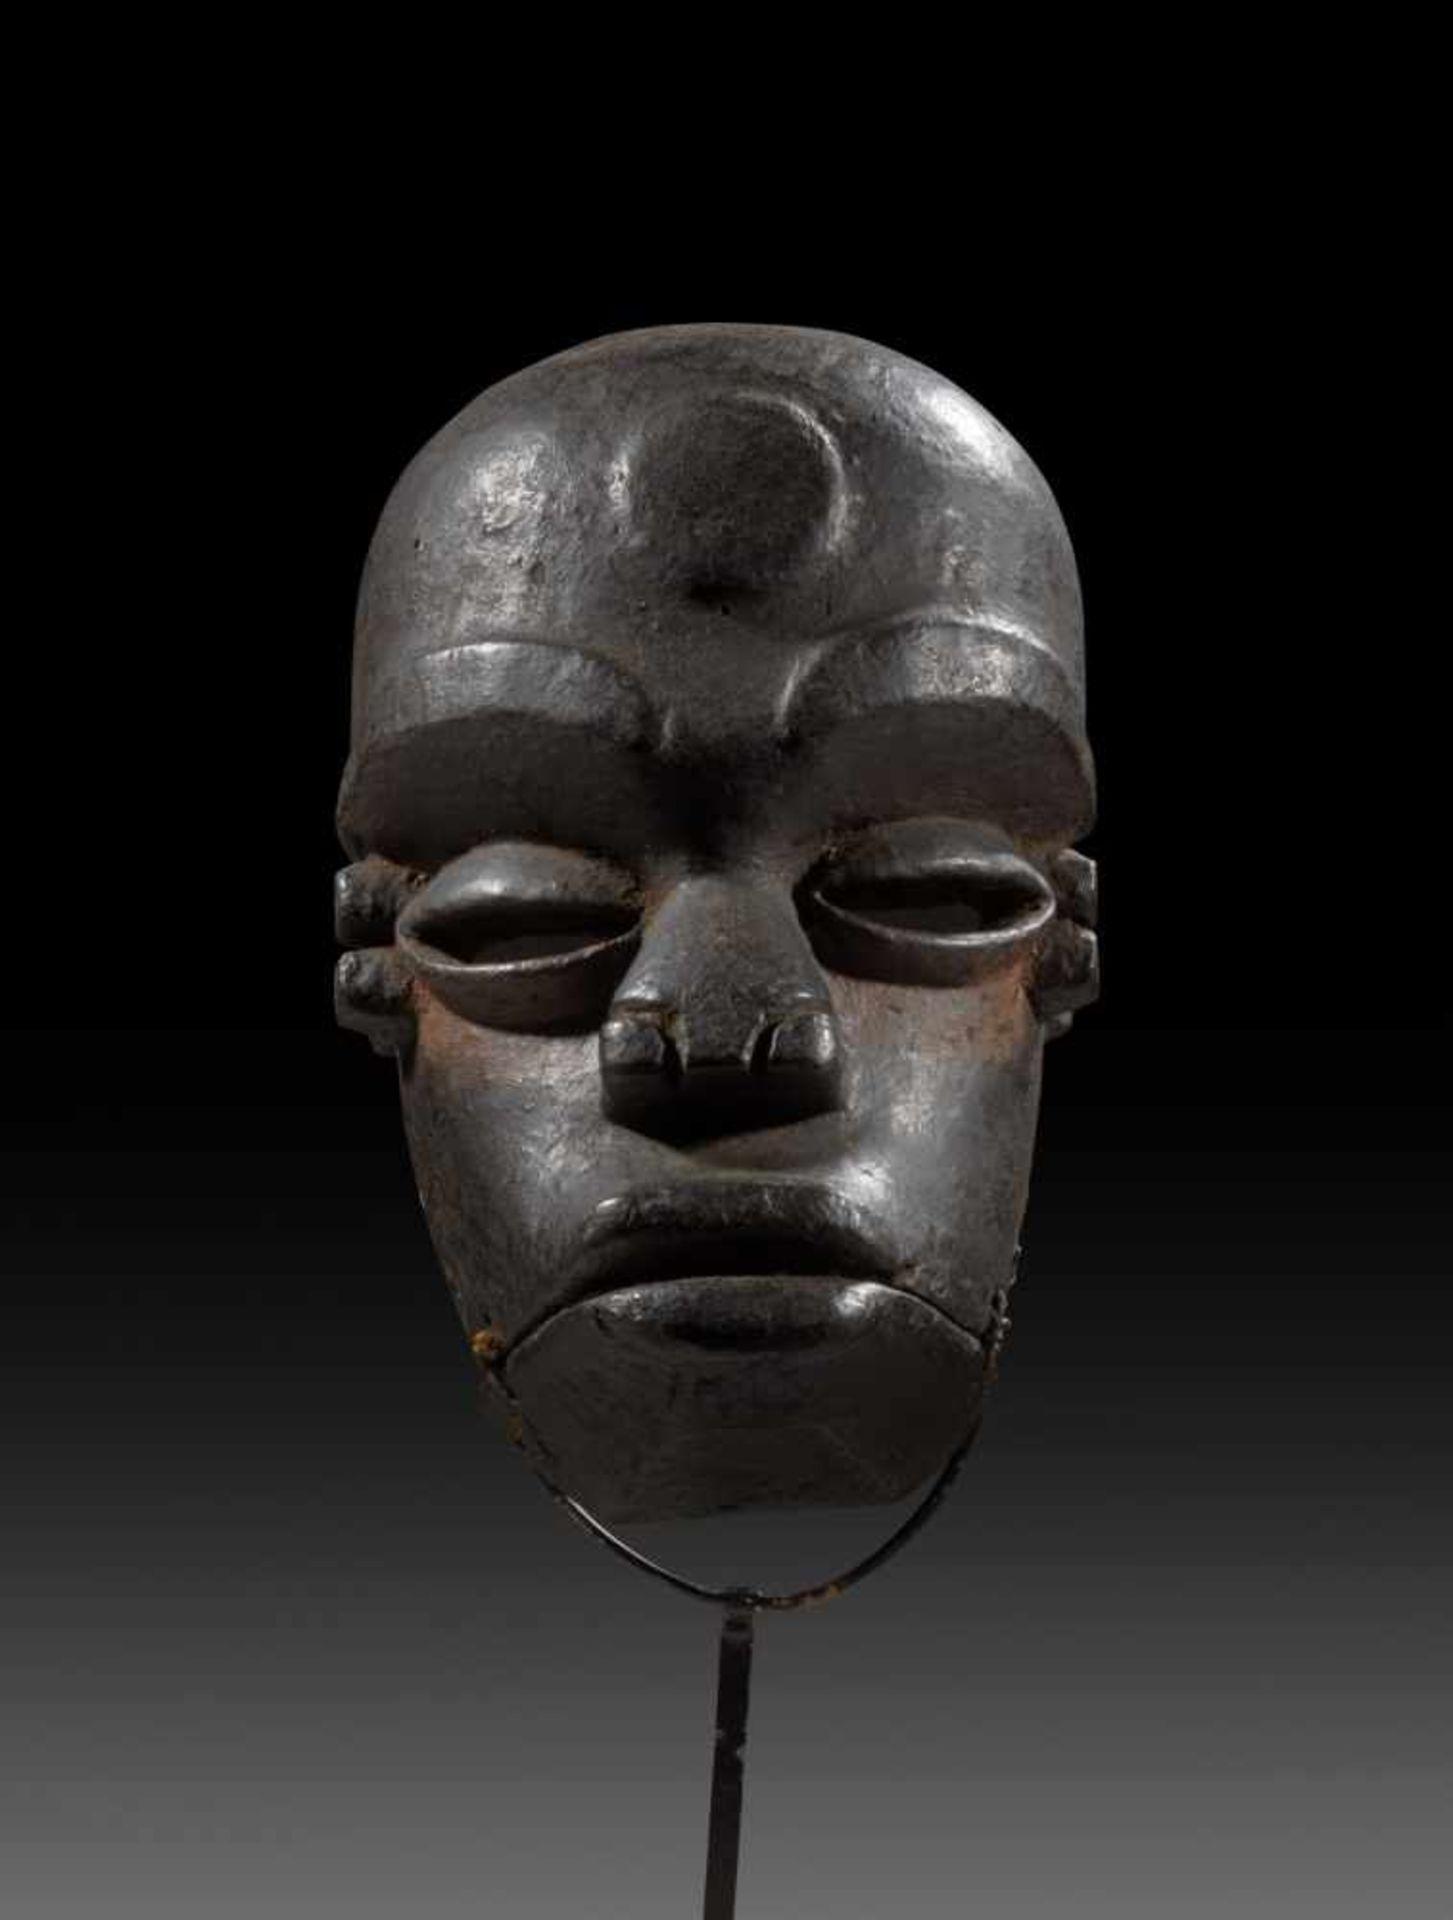 Klappkiefer-Maske 'idiok ekpo'. Nördliche Ibo, Nigeria. H 26cm. Mit prominent gestalteten